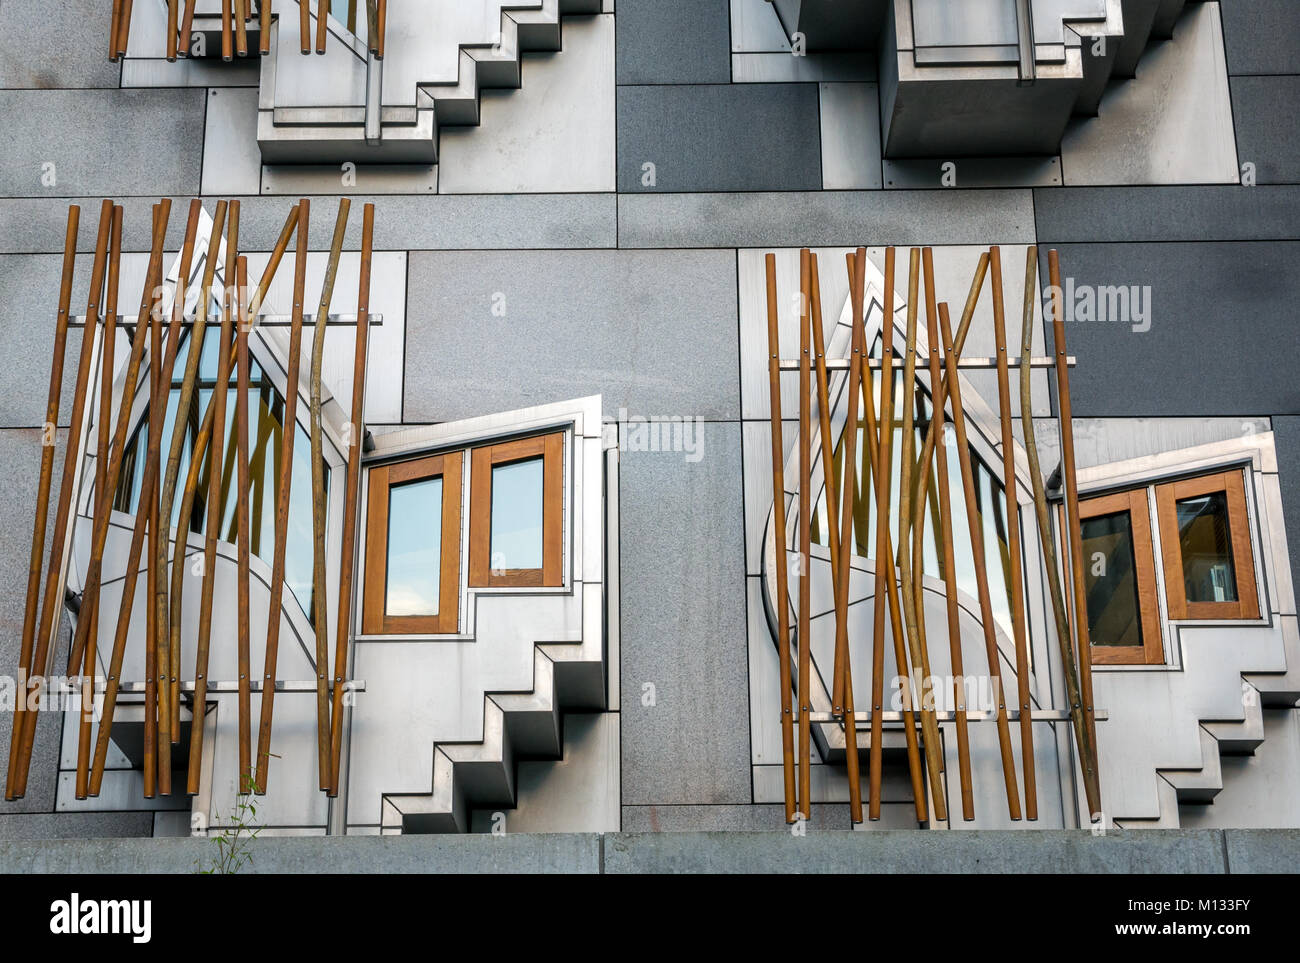 Pensate a cialde o spazi contemplativi nell'architettura moderna del parlamento Scozzese di Enric Mirales, Holyrood, Edimburgo, Scozia, Regno Unito Foto Stock